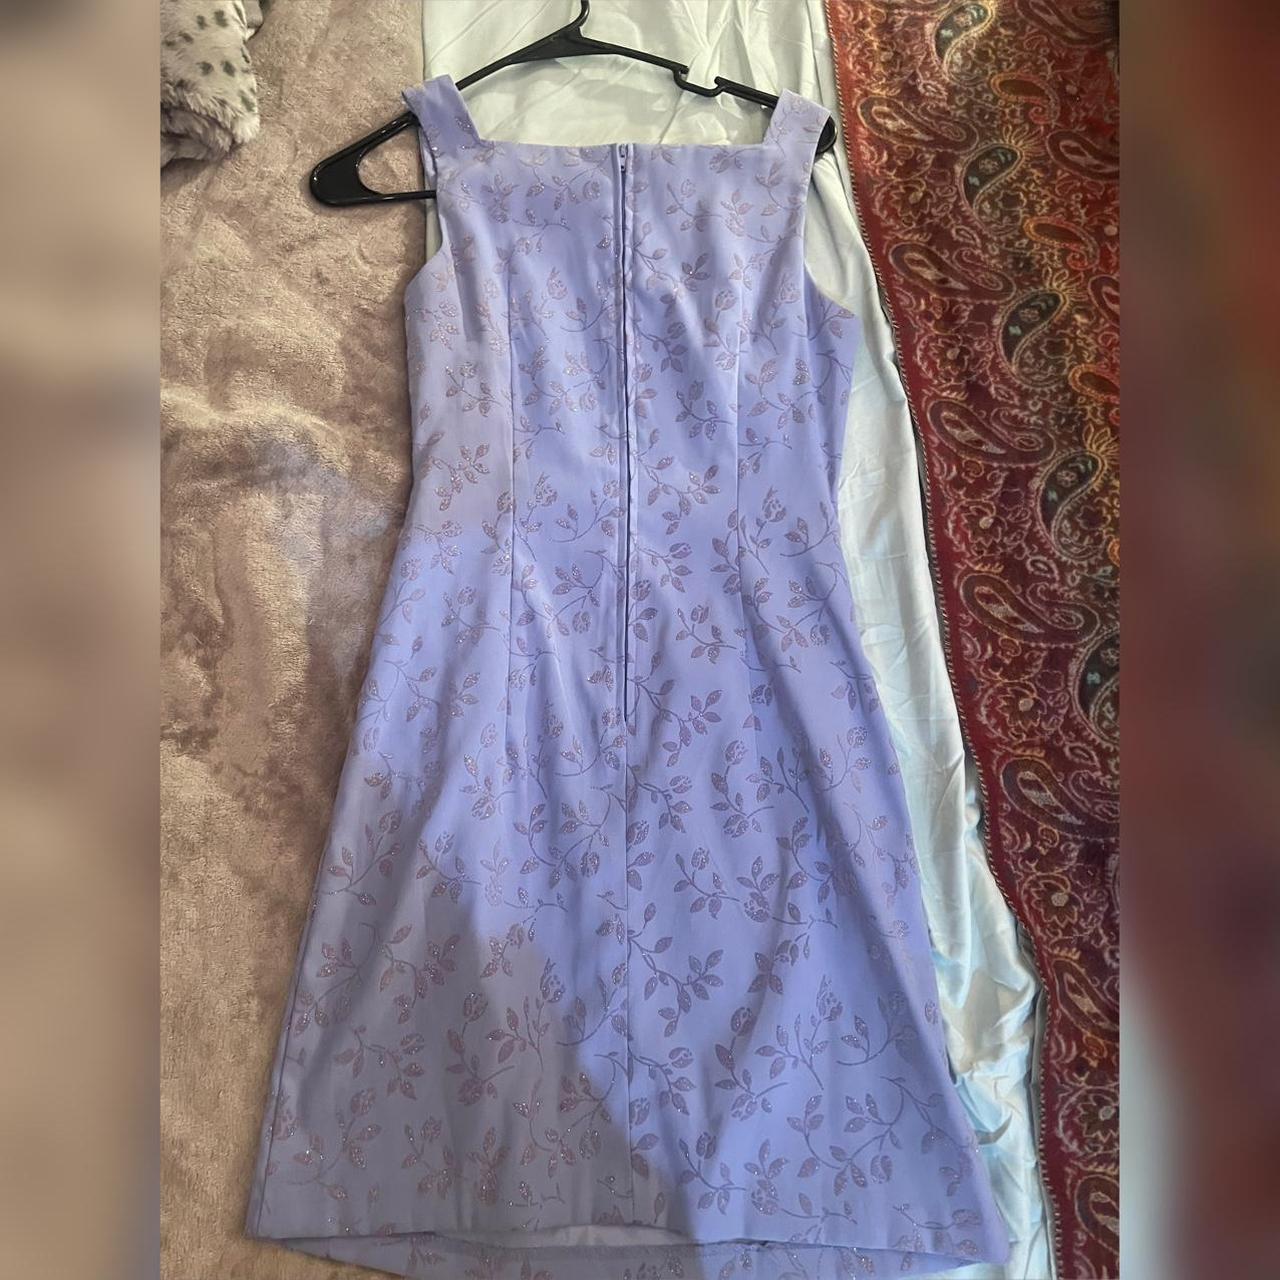 Vintage 90s Jodie Christopher lavender dress - Depop